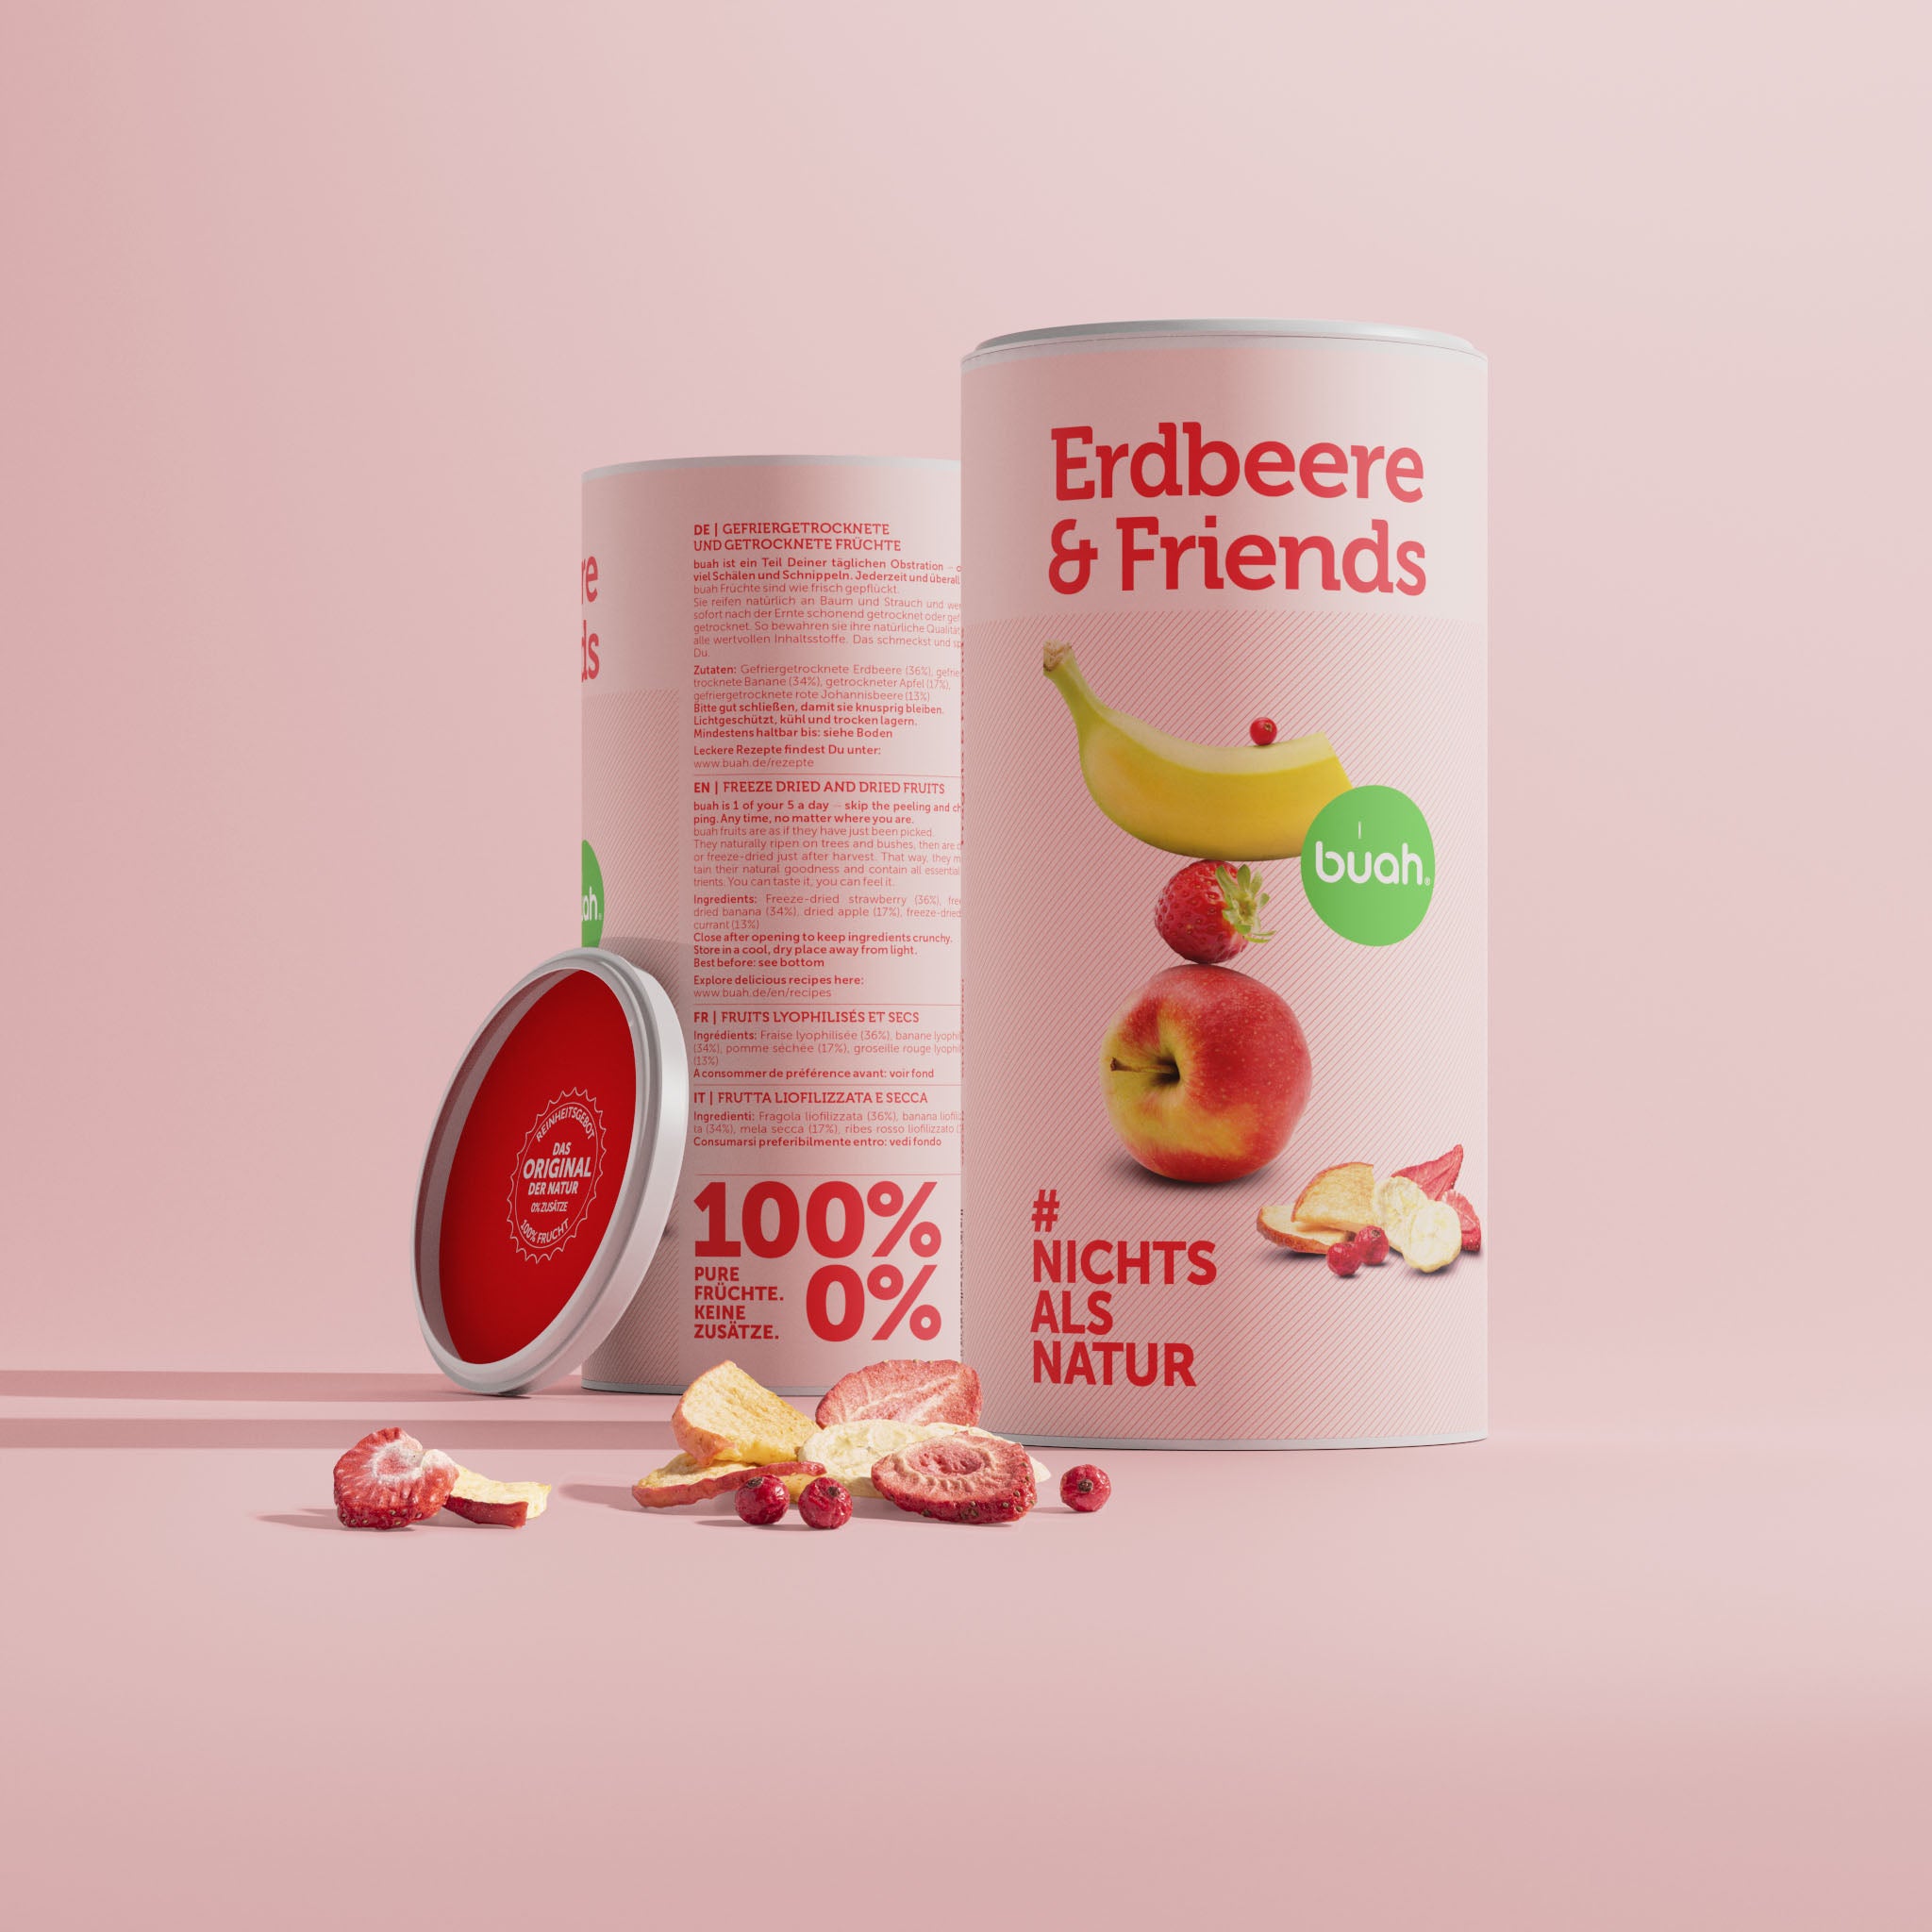 Erdbeere & Friends